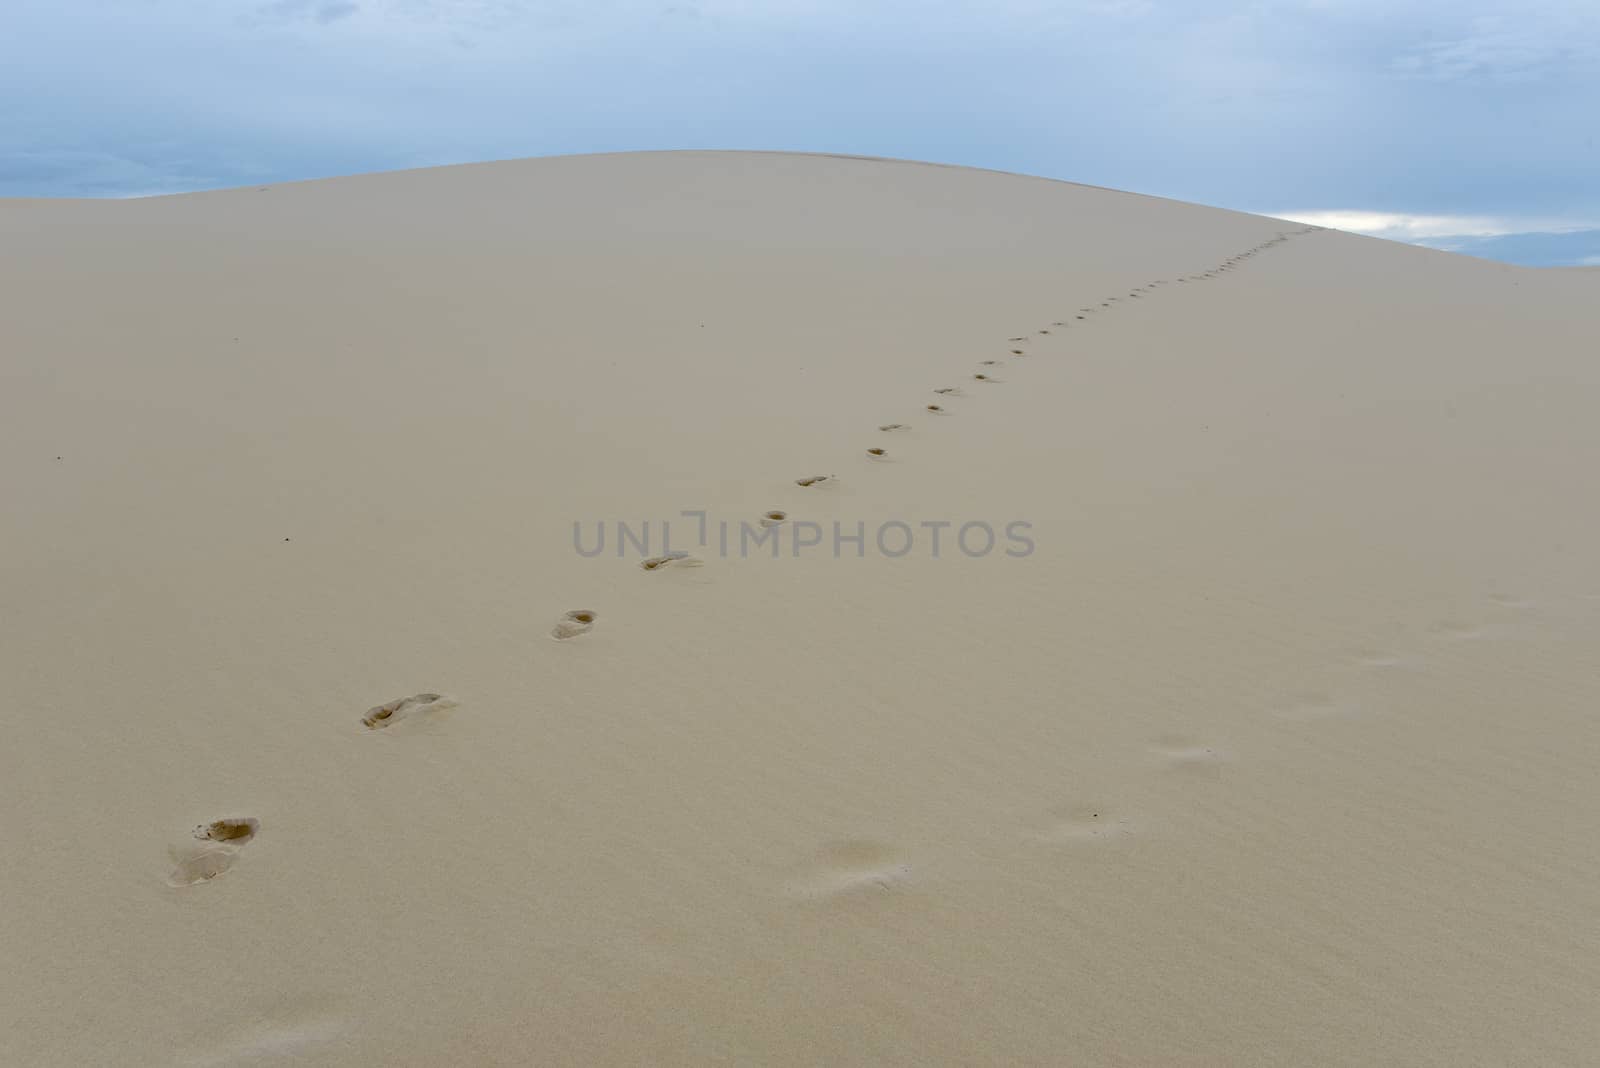 Dunes at Lencois Maranhenese National Park in Brazil